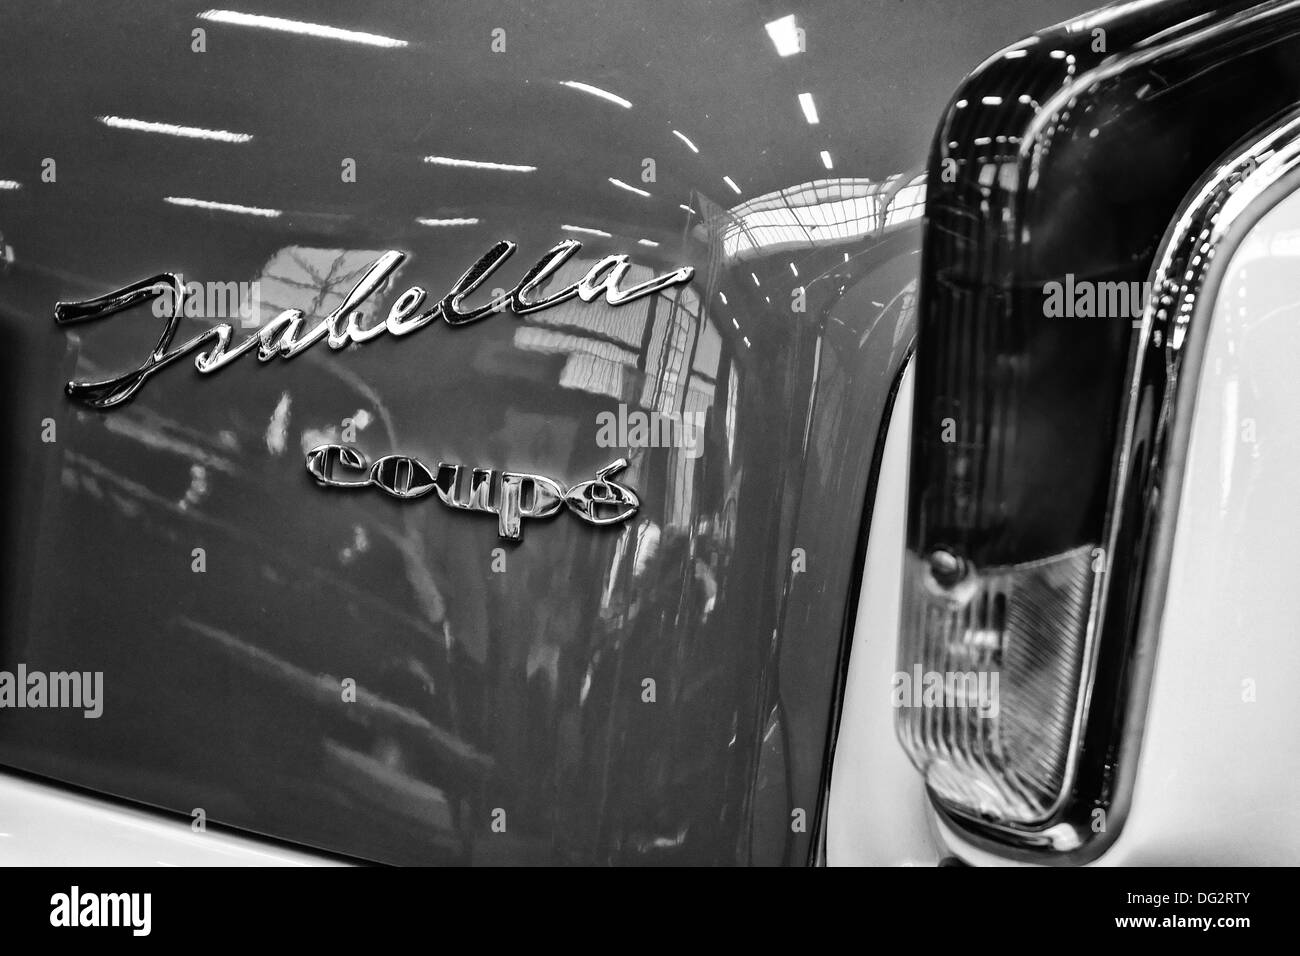 Emblem car Borgward Isabella Coupe Stock Photo